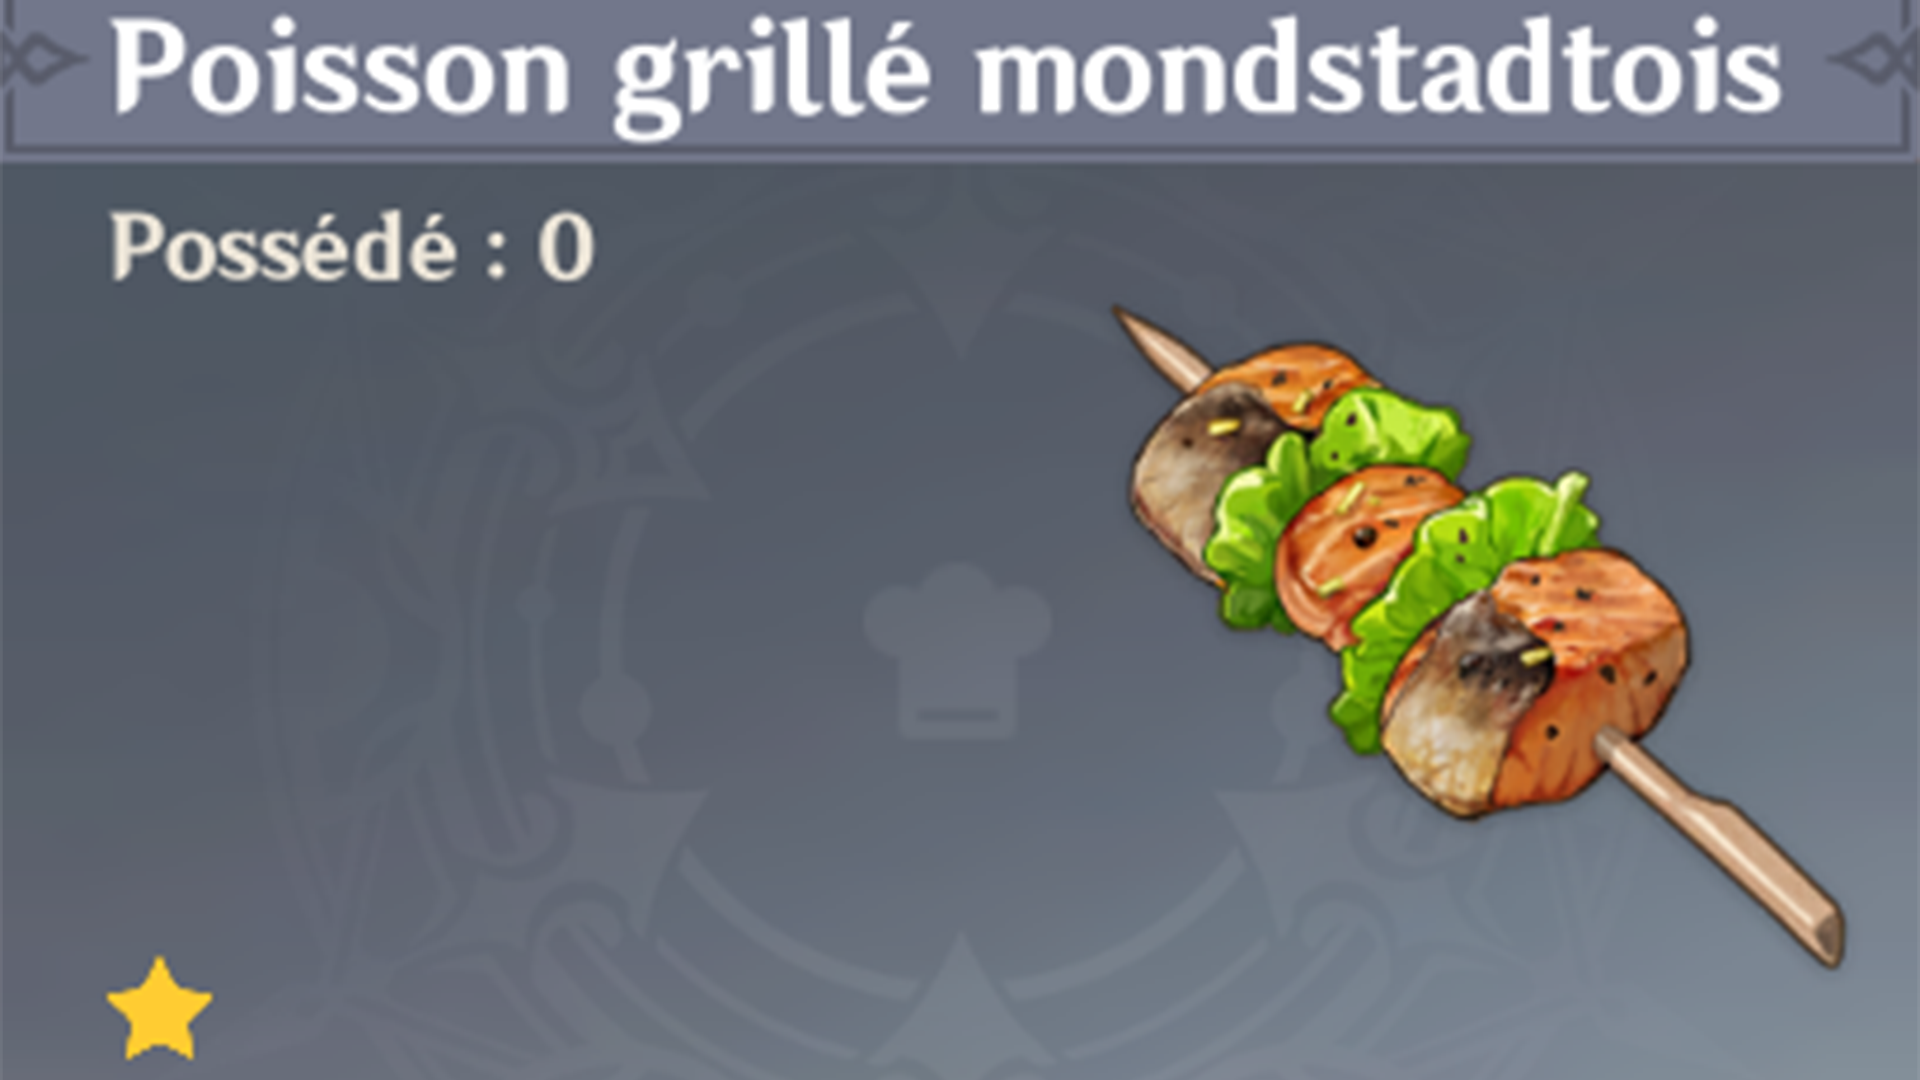 Comment réaliser la recette du poisson grillé mondstadtois sur Genshin Impact ?